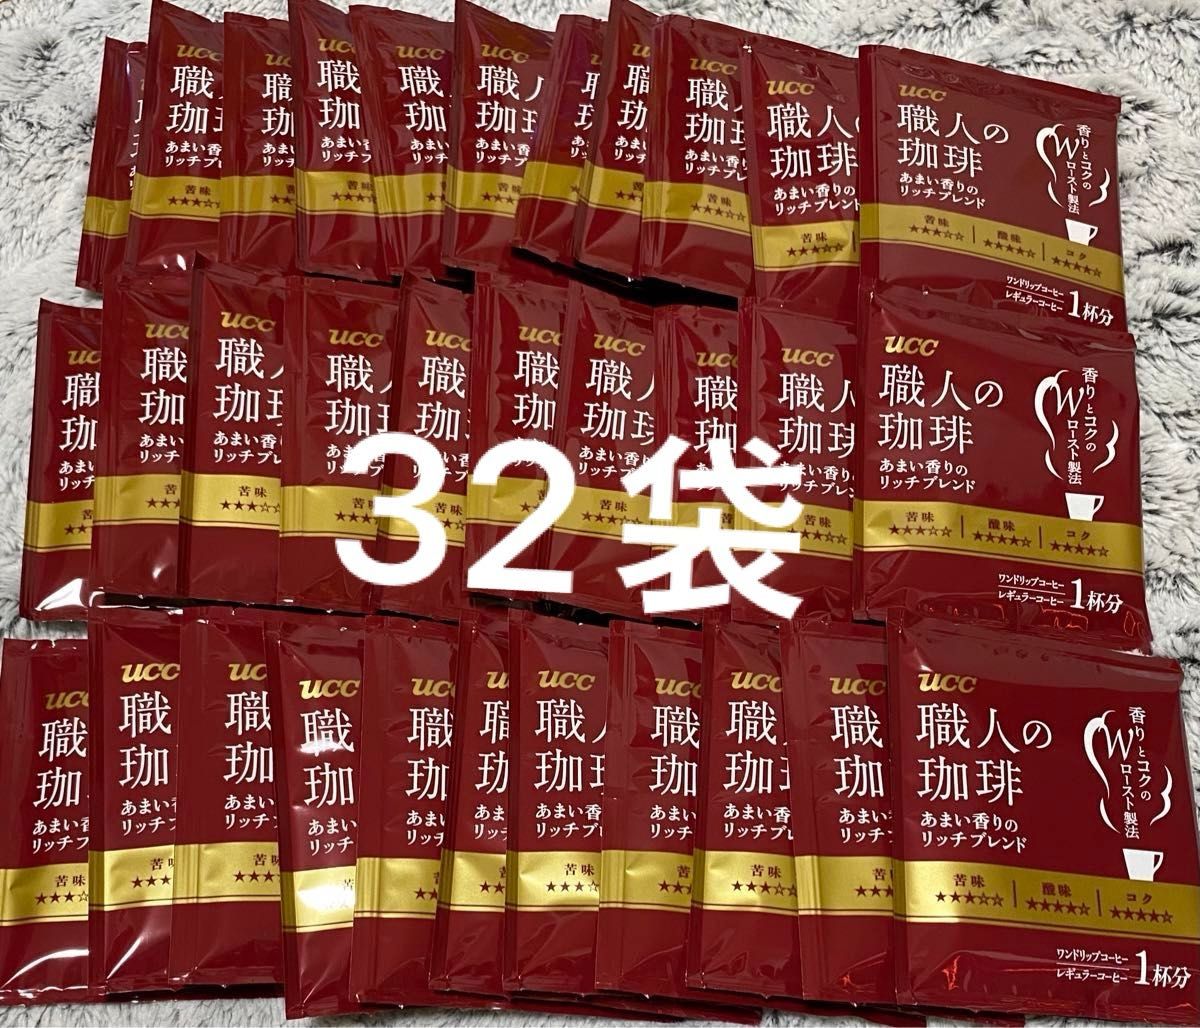 【32袋】 UCC 職人の珈琲 ドリップコーヒー あまい香りのリッチブレンド 7g 32袋